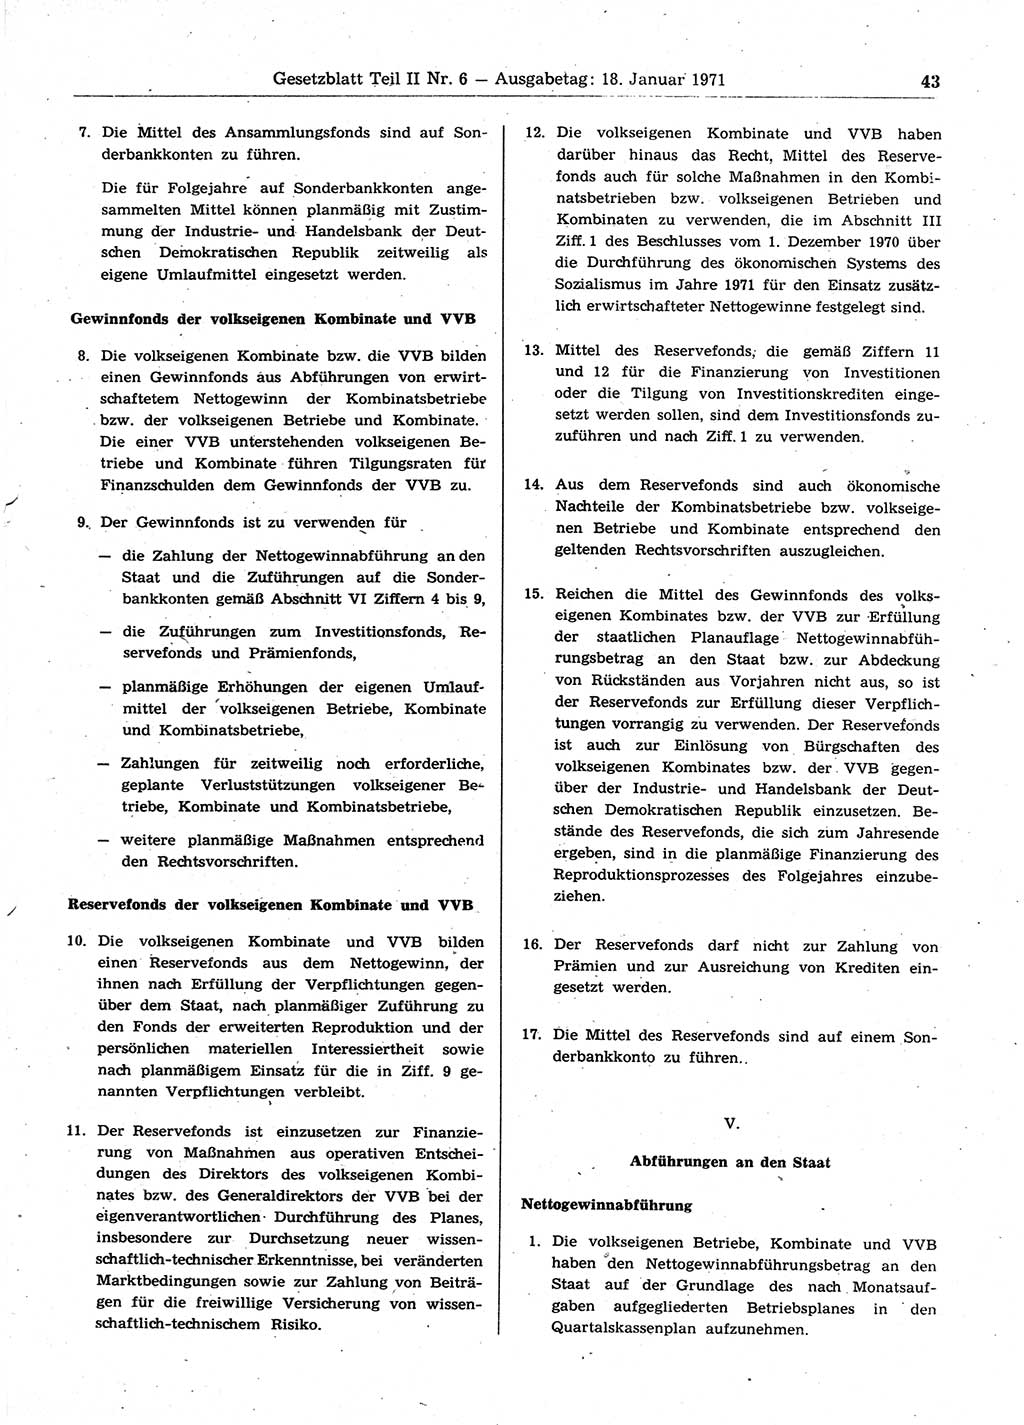 Gesetzblatt (GBl.) der Deutschen Demokratischen Republik (DDR) Teil ⅠⅠ 1971, Seite 43 (GBl. DDR ⅠⅠ 1971, S. 43)